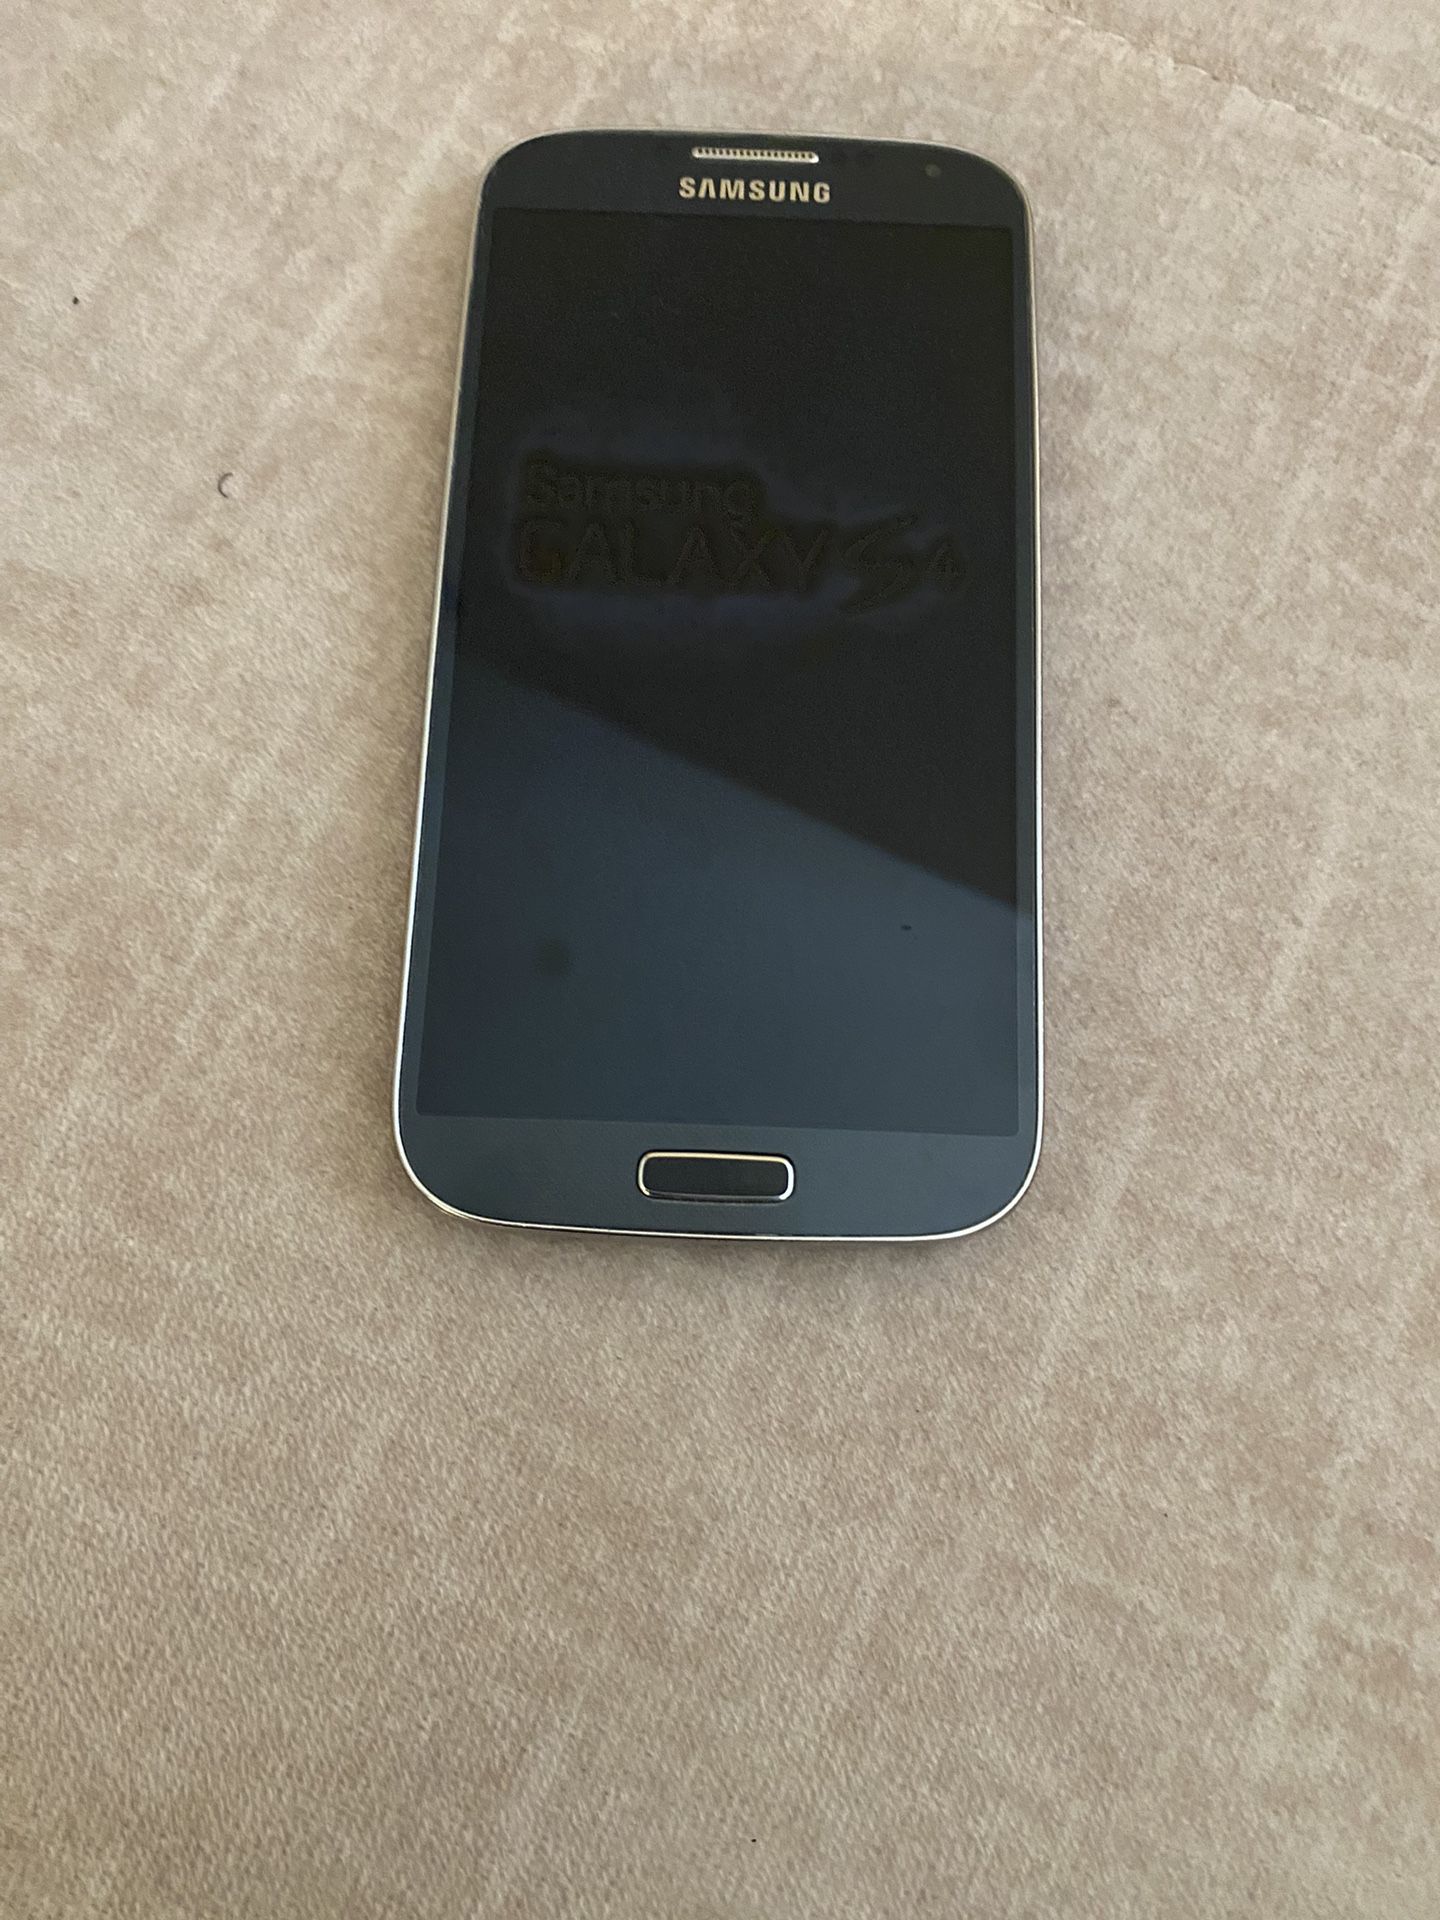 Samsung Galaxy S4 Verizon 